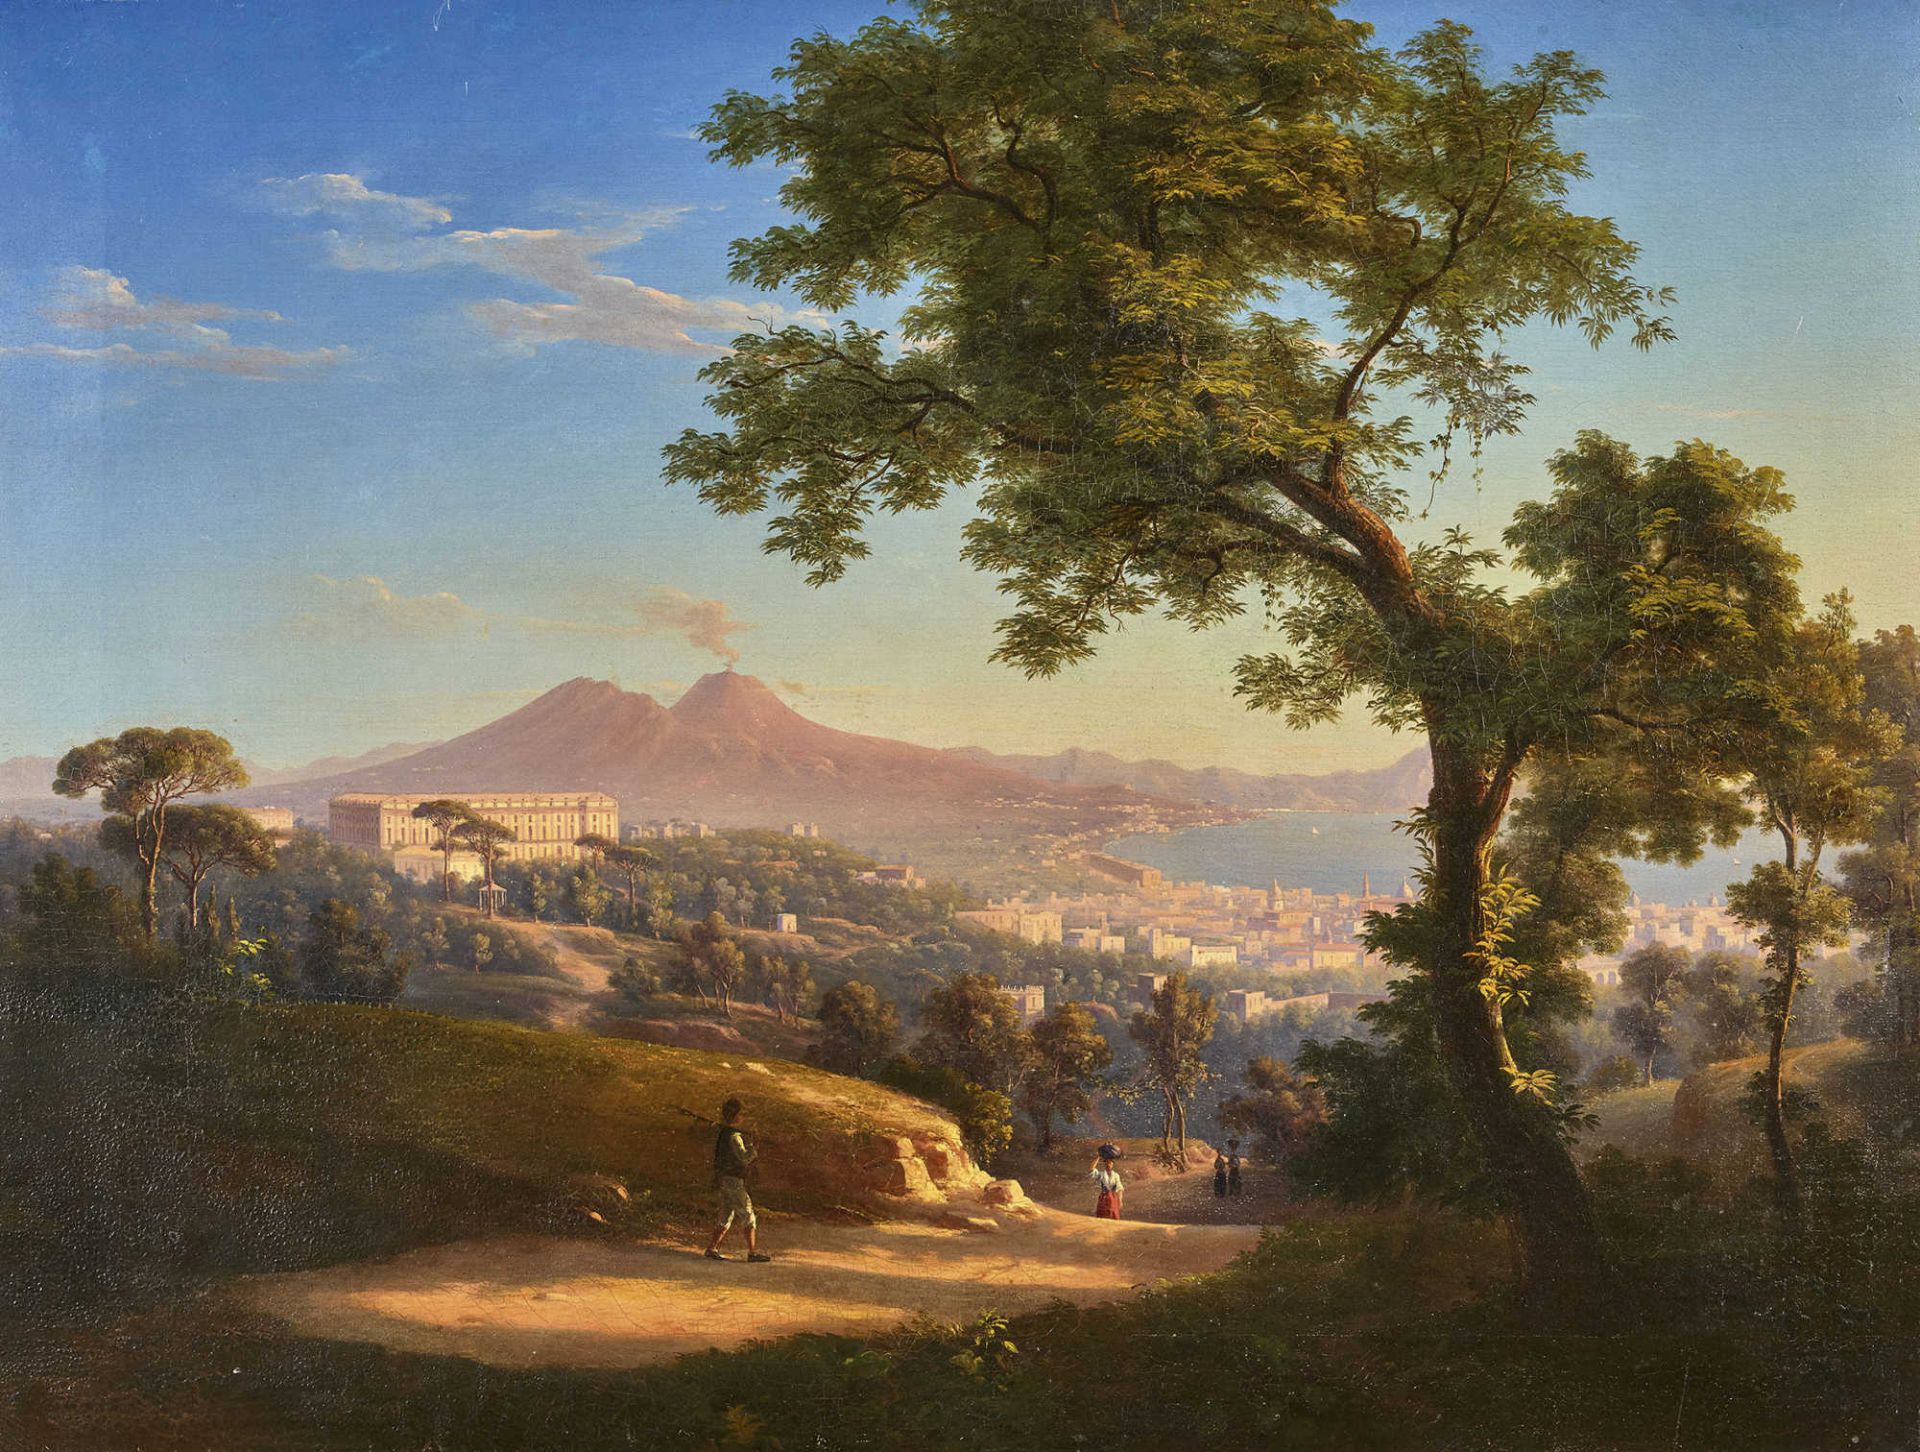 ITALIEN, 19. JH.Blick auf Neapel und den Vesuv.Öl auf Leinwand, doubliert,78x104,5 cm- - -22.00 %